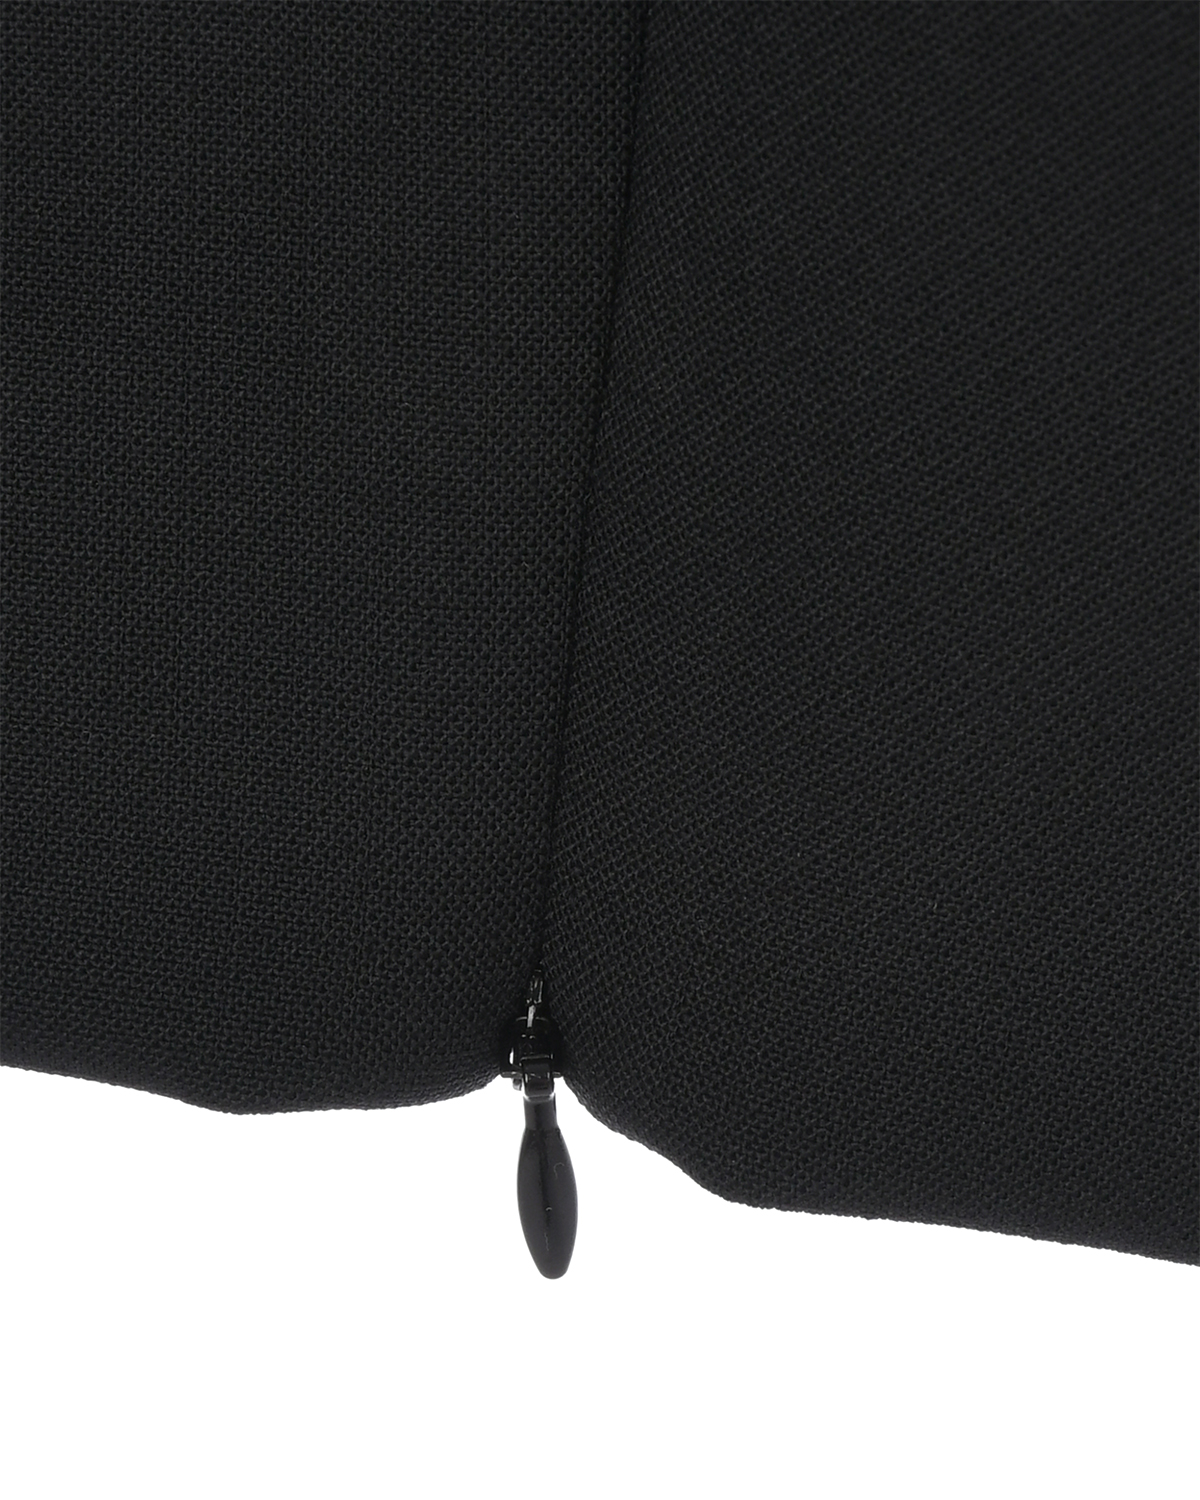 Зауженные черные брюки длиной 7/8 Dorothee Schumacher, размер 42, цвет черный Зауженные черные брюки длиной 7/8 Dorothee Schumacher - фото 9